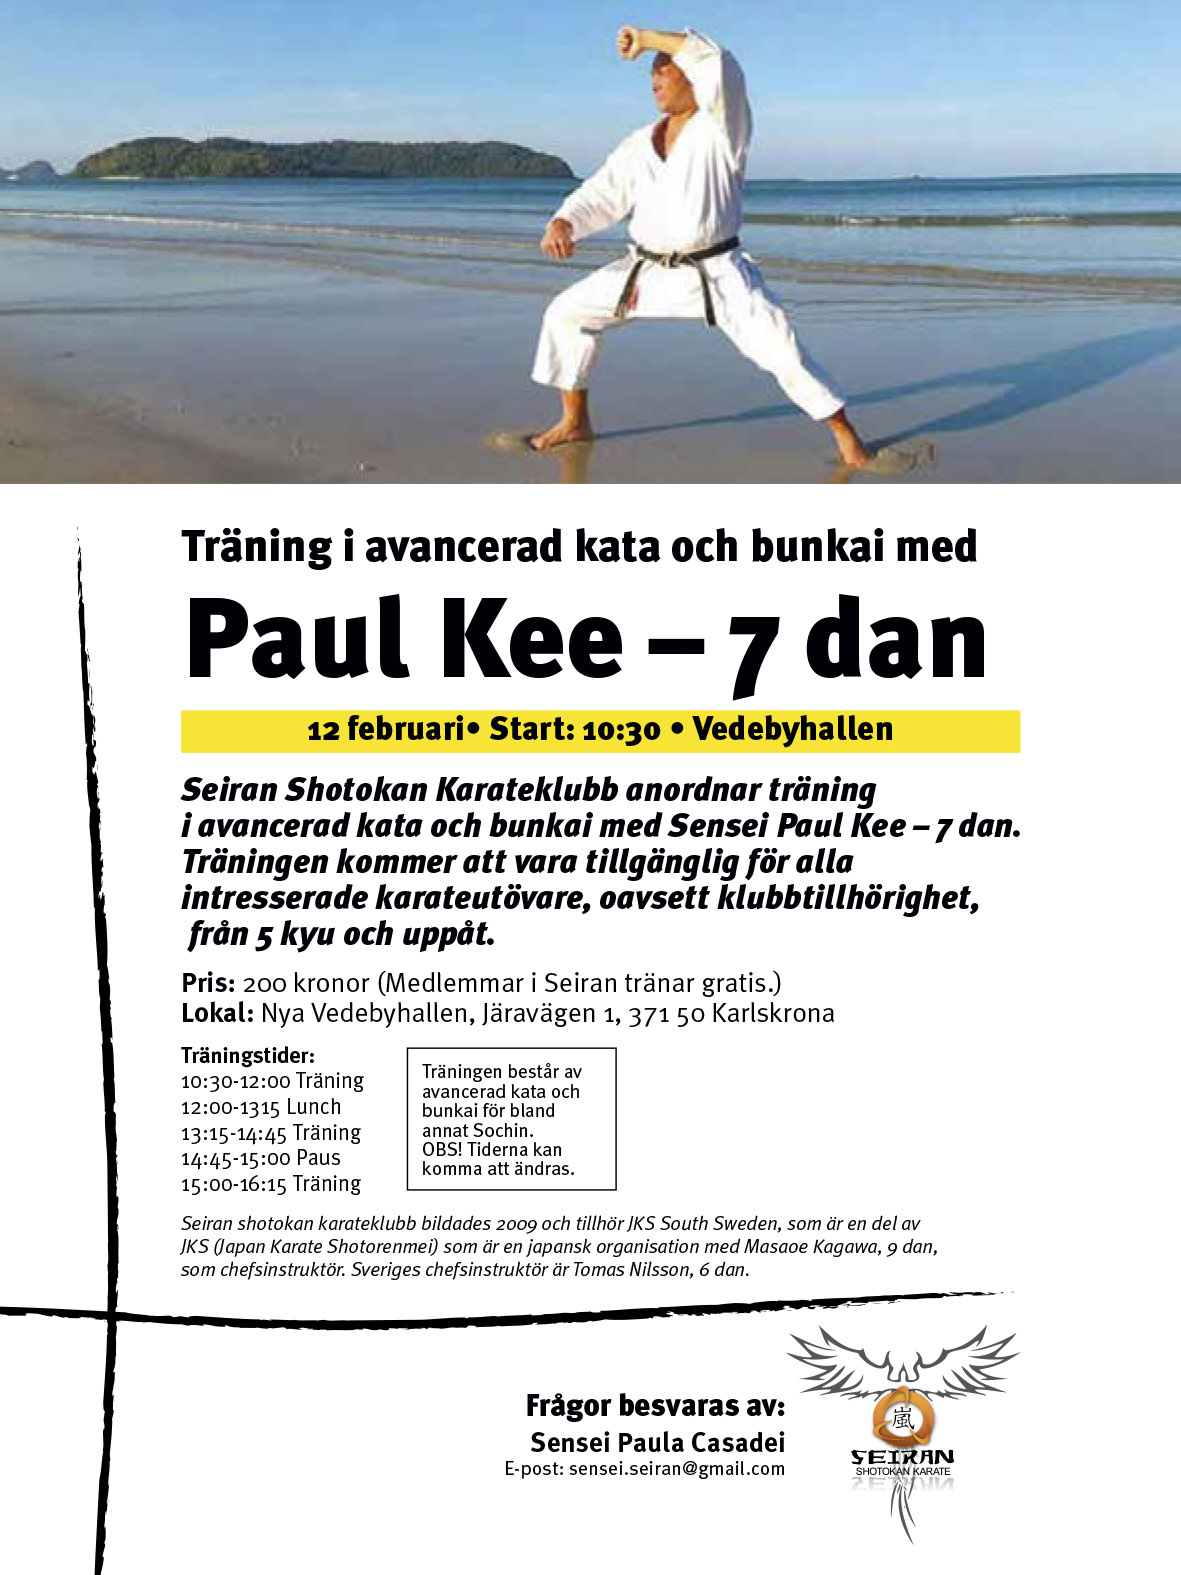 Missa inte chansen att träna kata och bunkai med Paul Kee